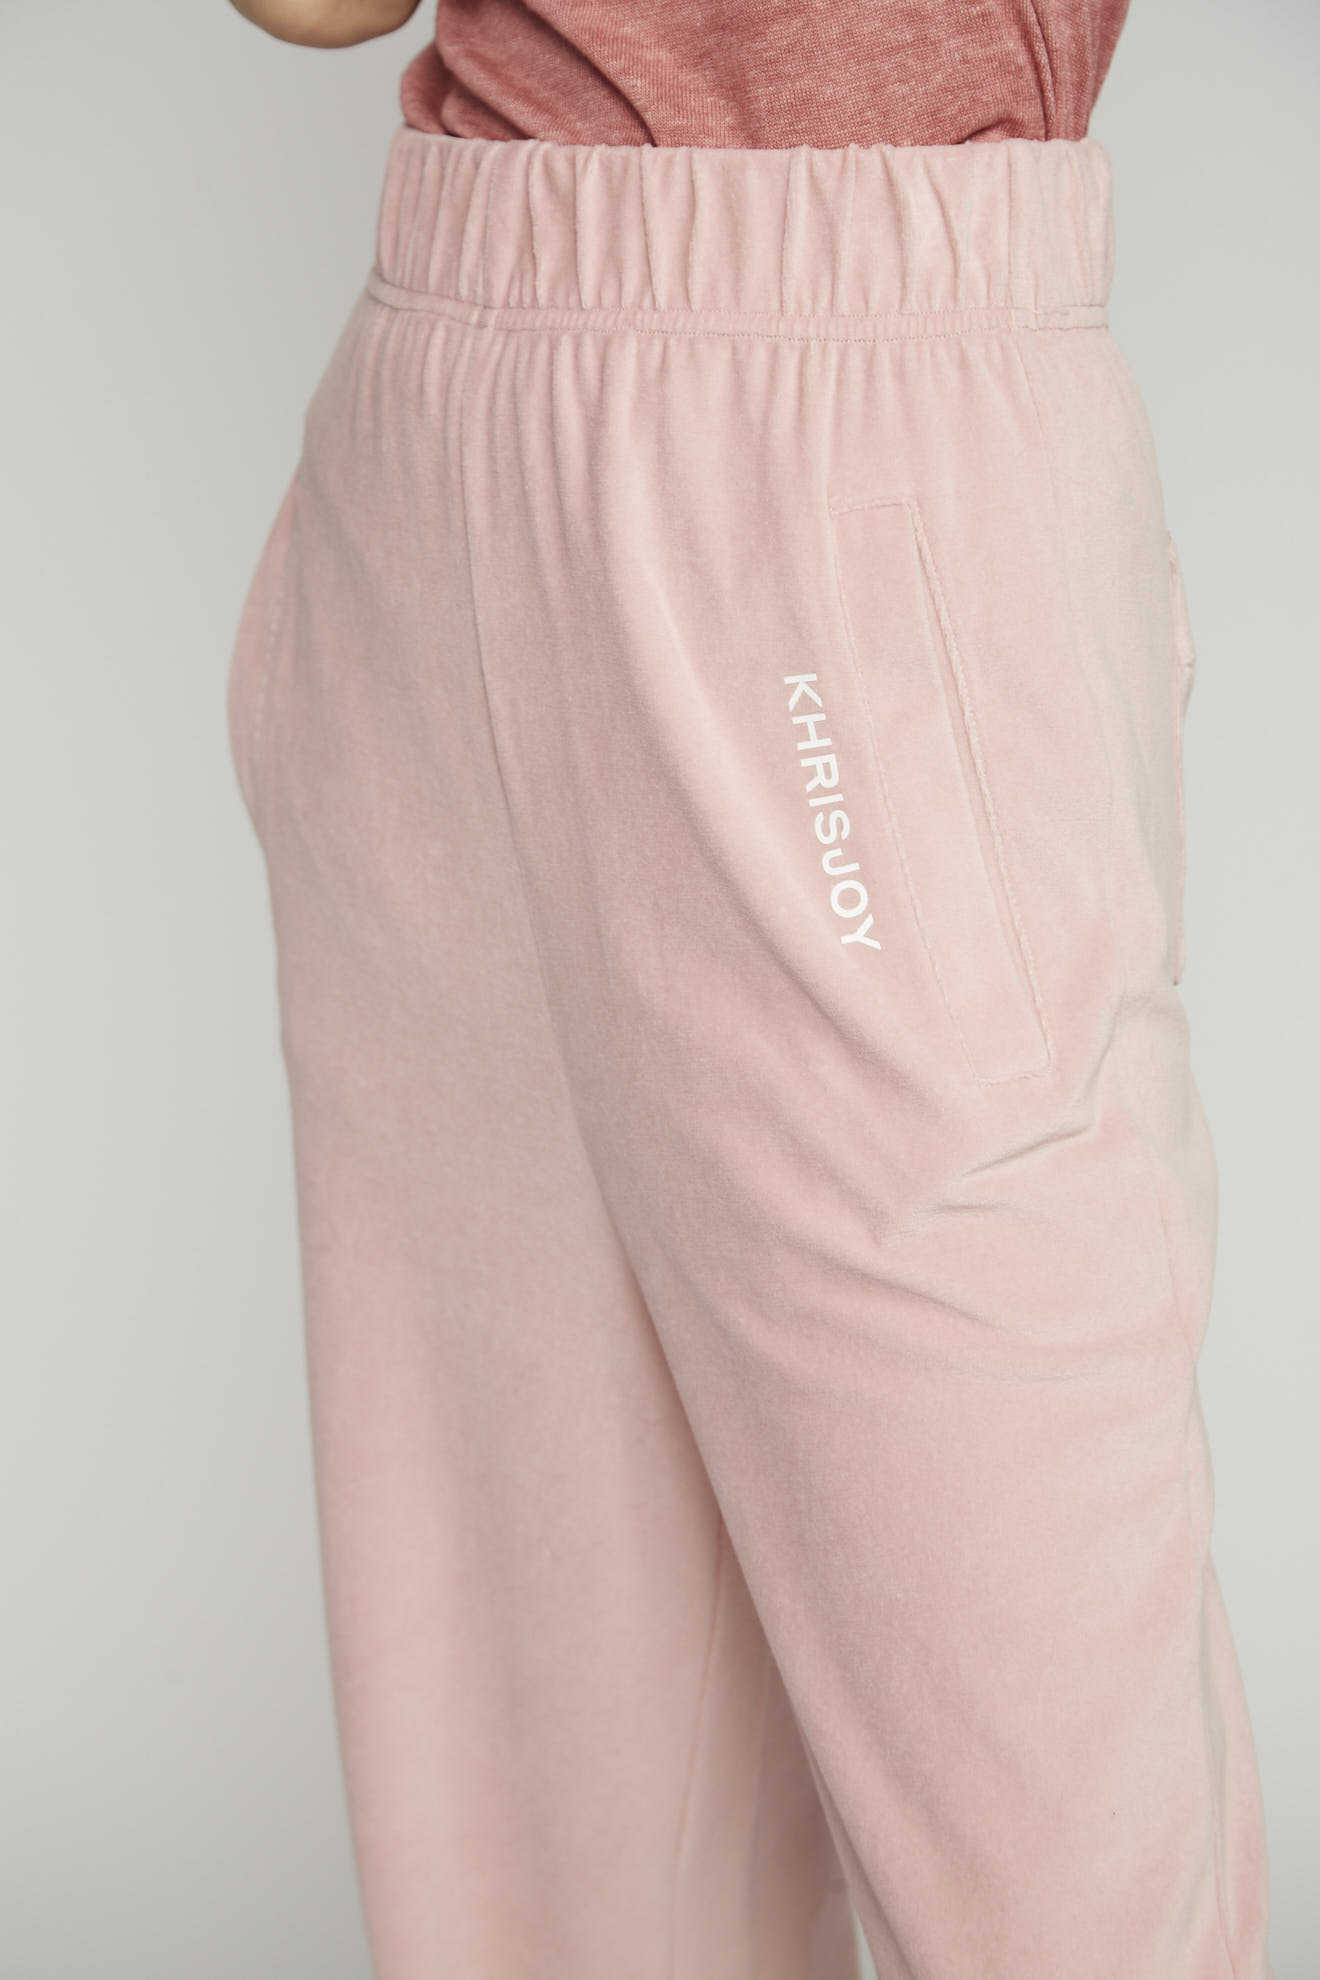 khrisjoy pants rosé plain cotton model back